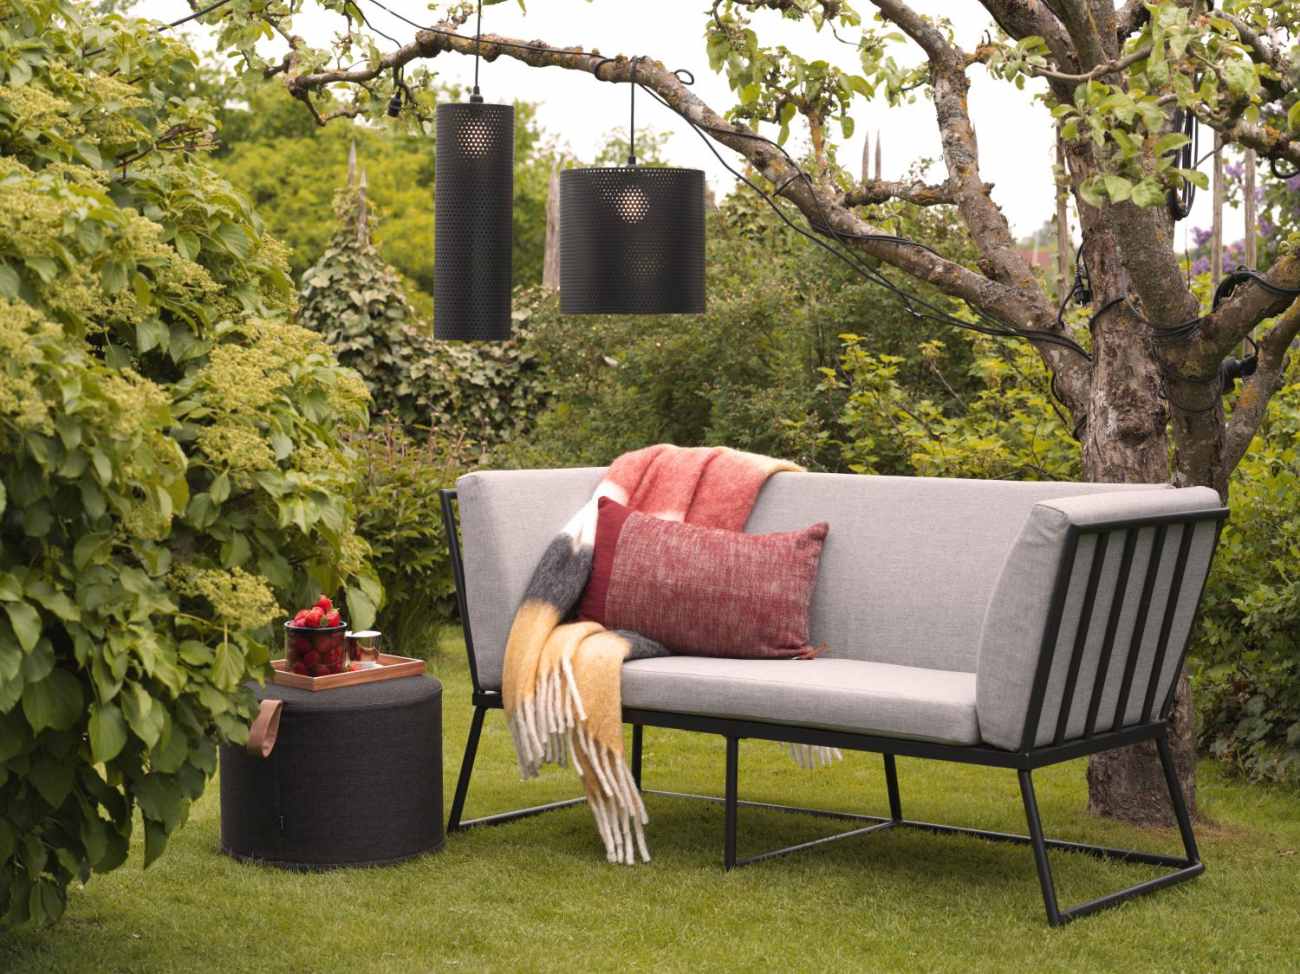 Das Gartensofa Vence überzeugt mit seinem modernen Design. Gefertigt wurde er aus Stoff, welcher einen grauen Farbton besitzt. Das Gestell ist aus Metall und hat eine schwarze Farbe. Die Sitzhöhe des Sofas beträgt 43 cm.